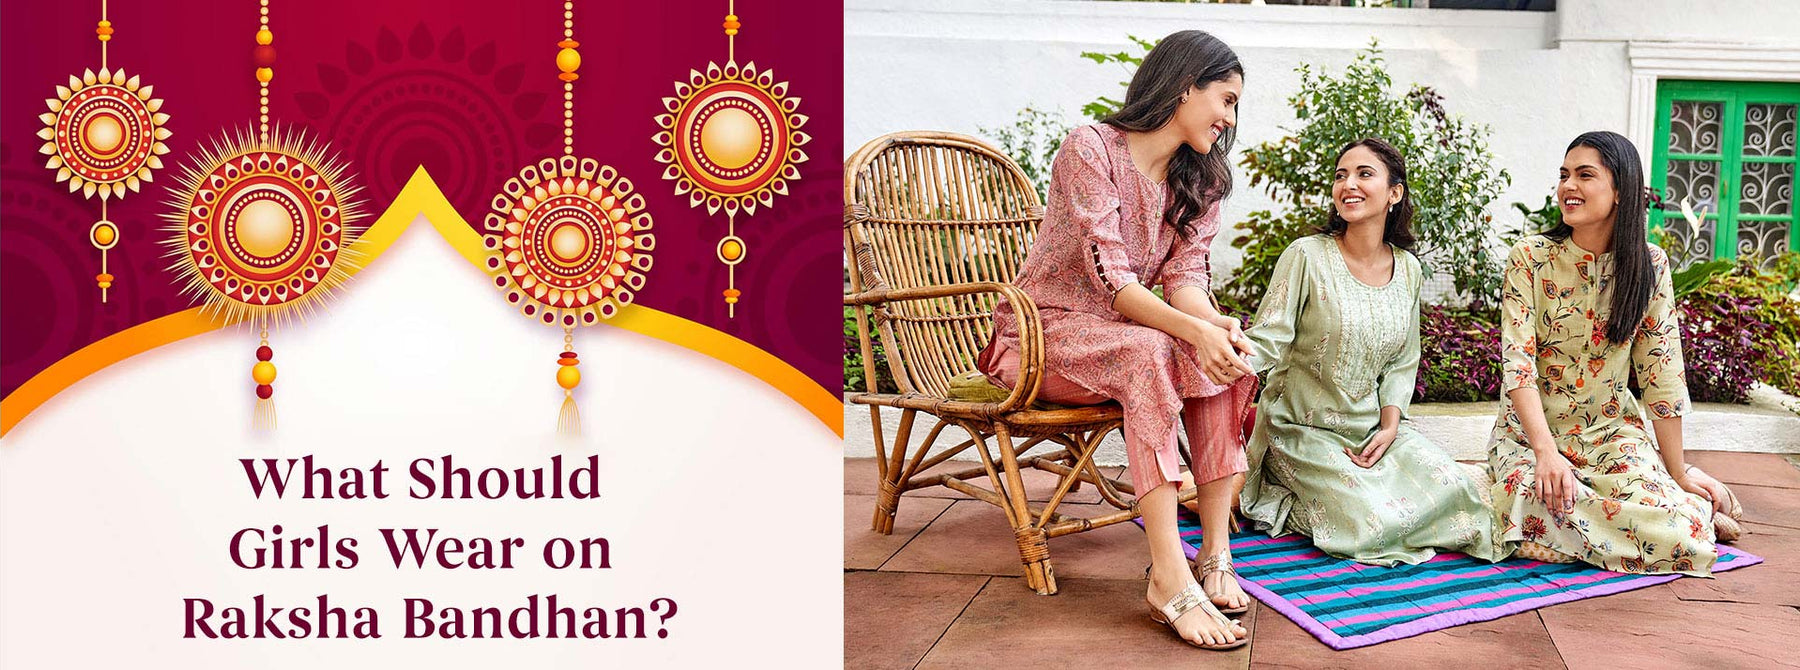 What Should Girls Wear on Raksha Bandhan?